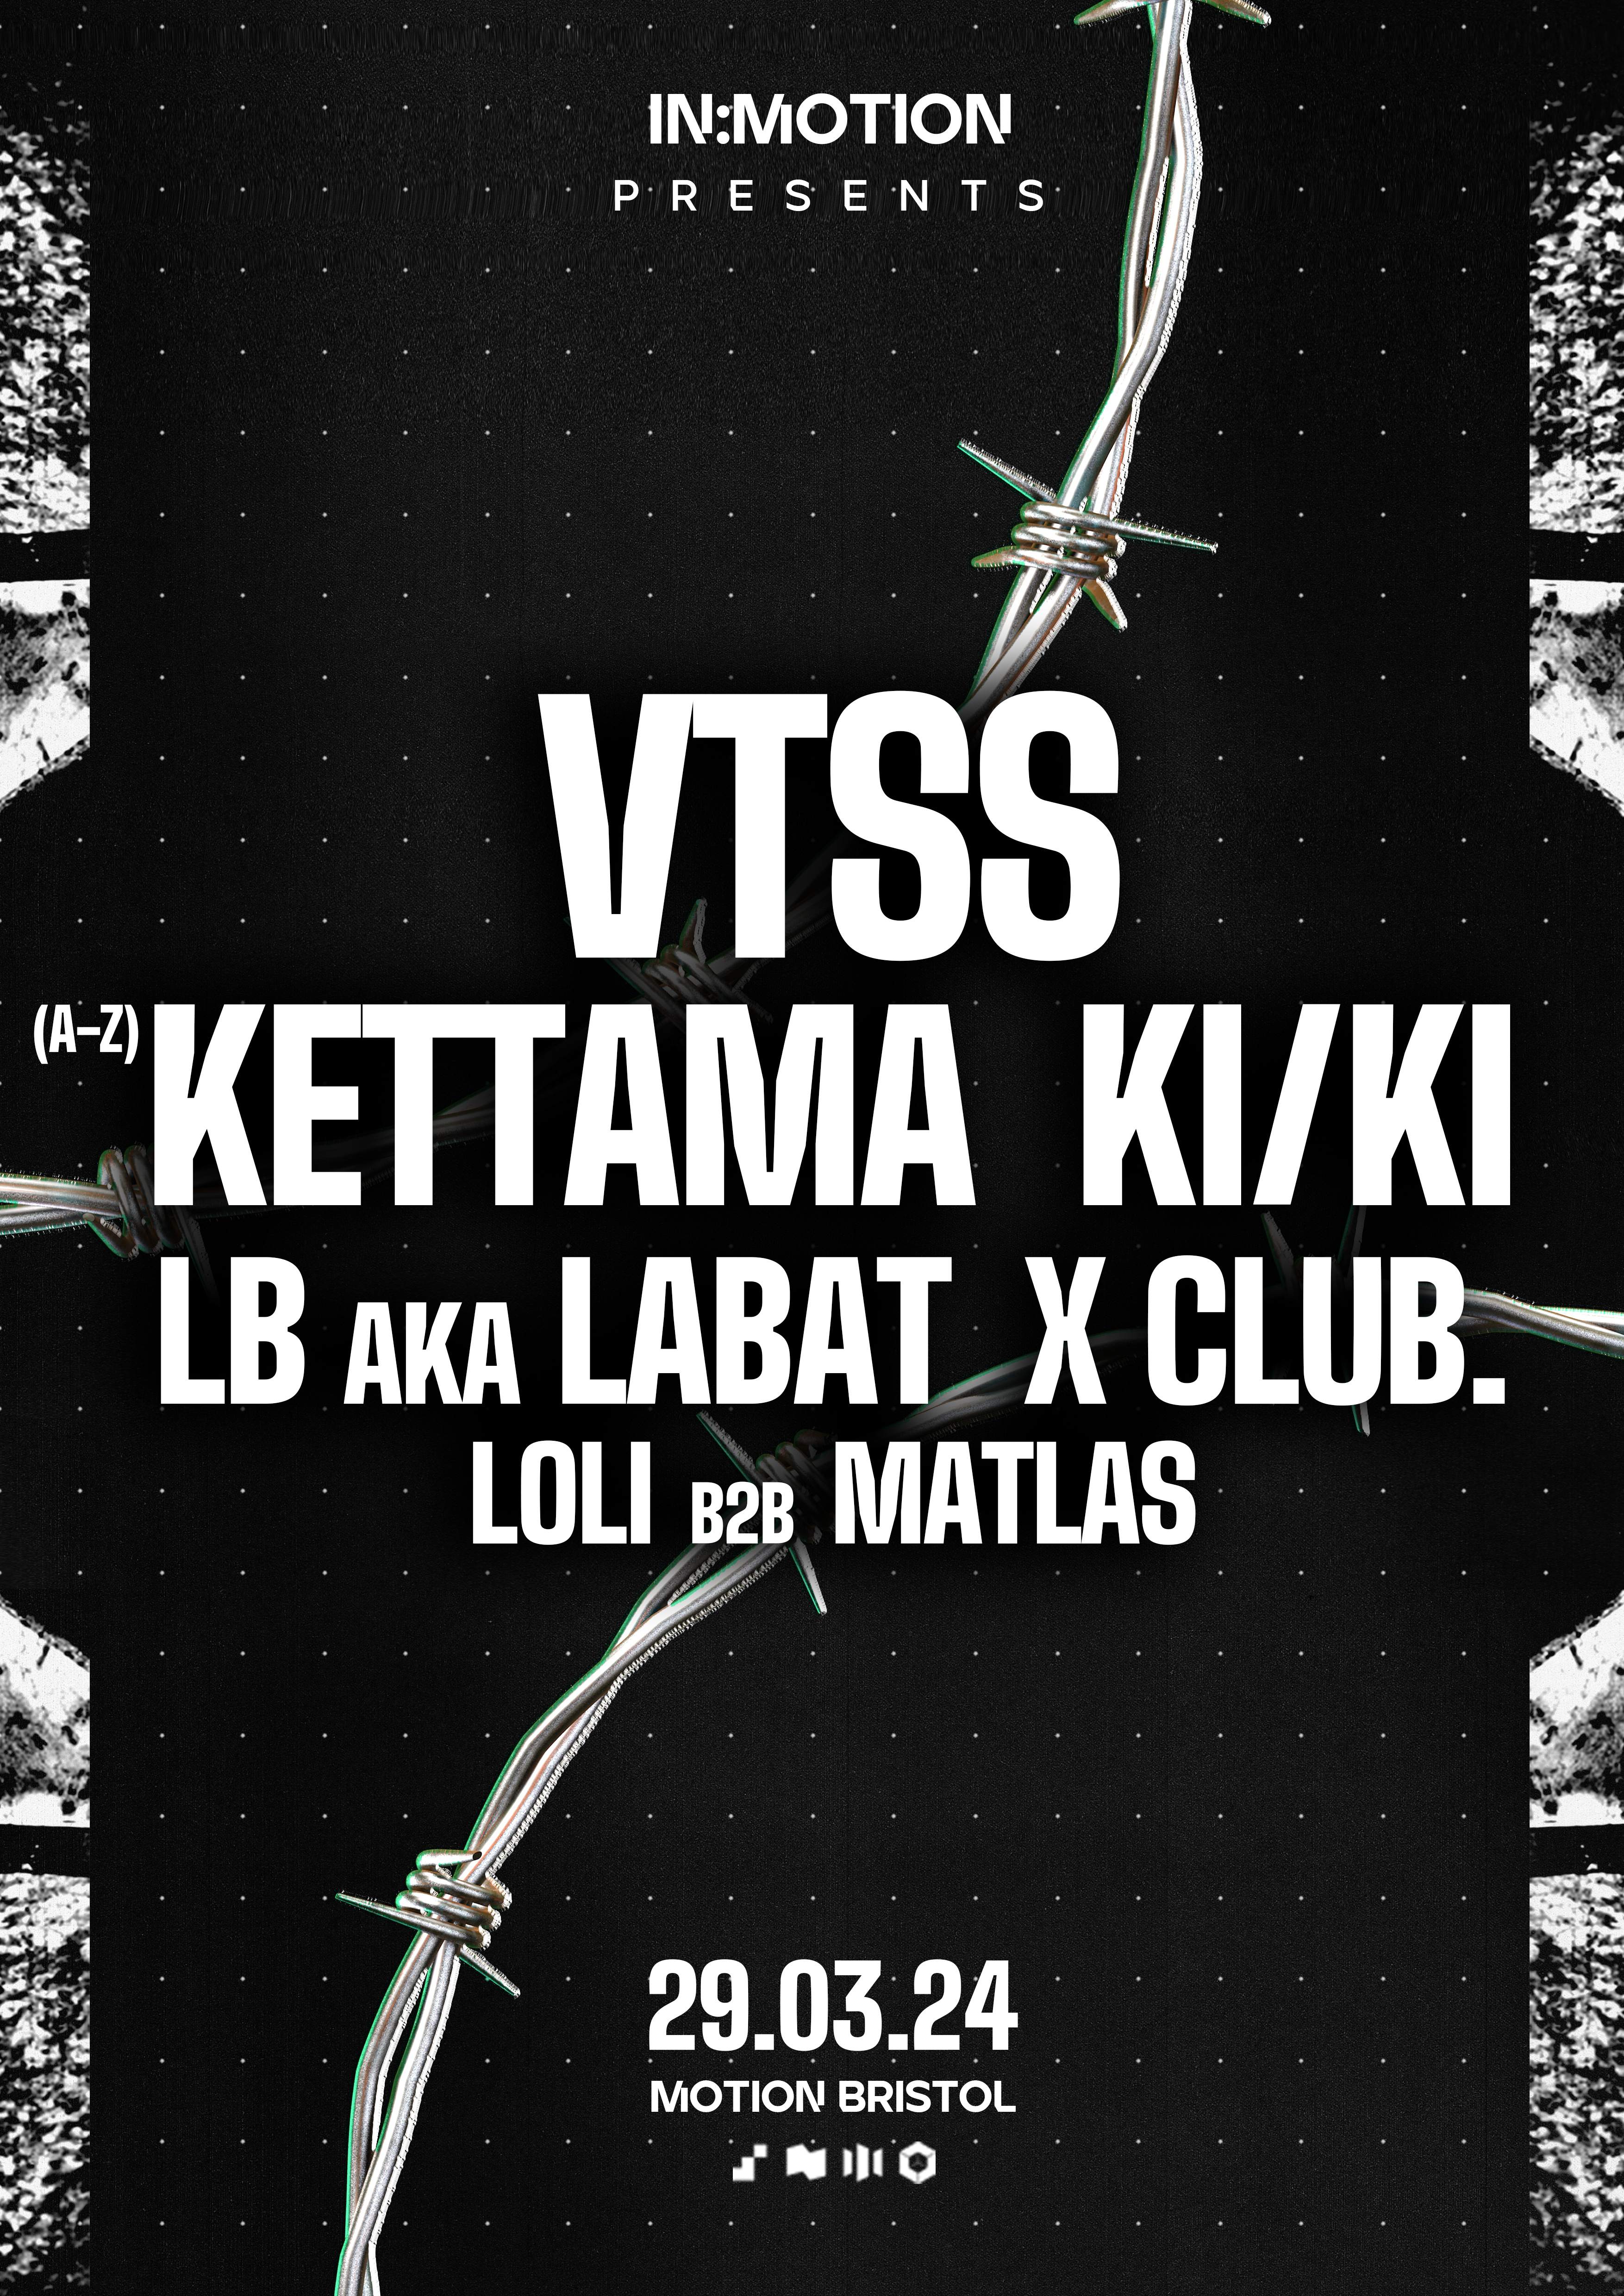 In:Motion presents: VTSS, KI/KI, KETTAMA, LB aka LABAT & X Club - フライヤー裏